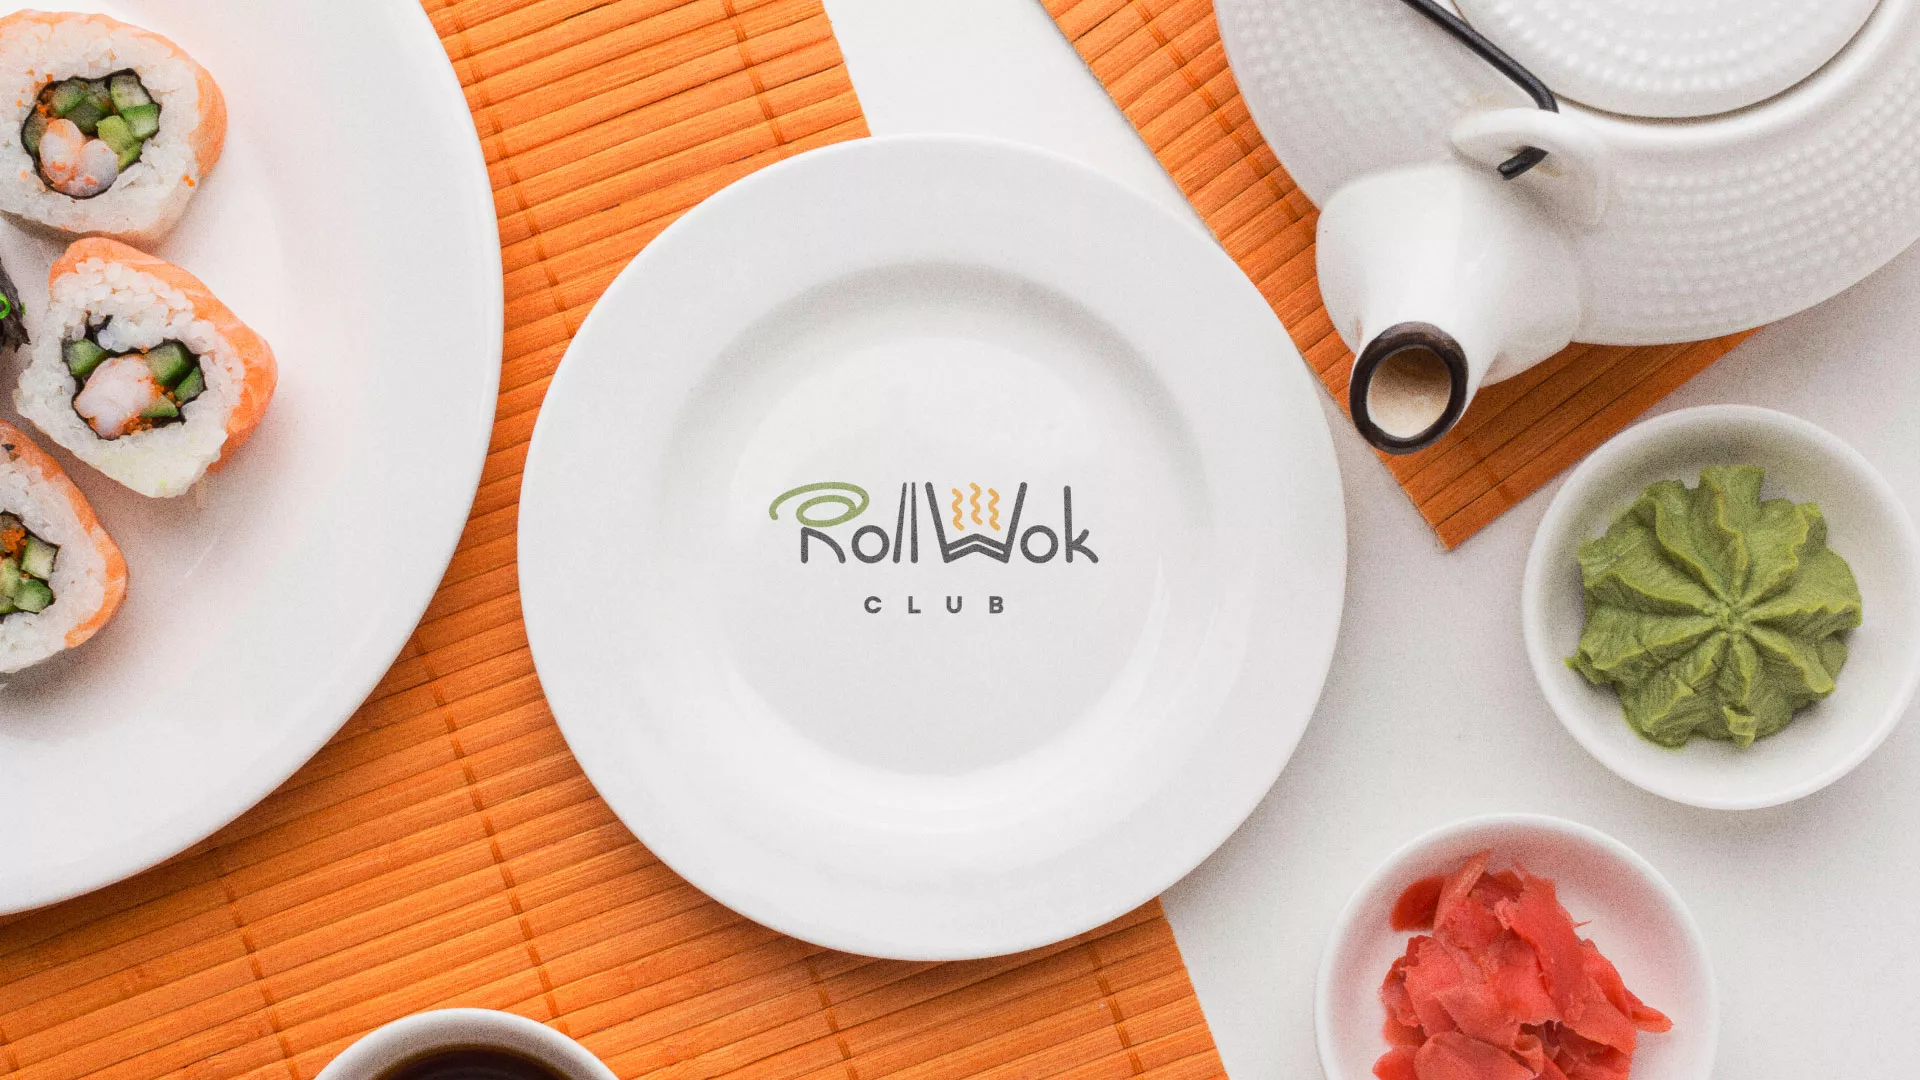 Разработка логотипа и фирменного стиля суши-бара «Roll Wok Club» в Новой Ладоге